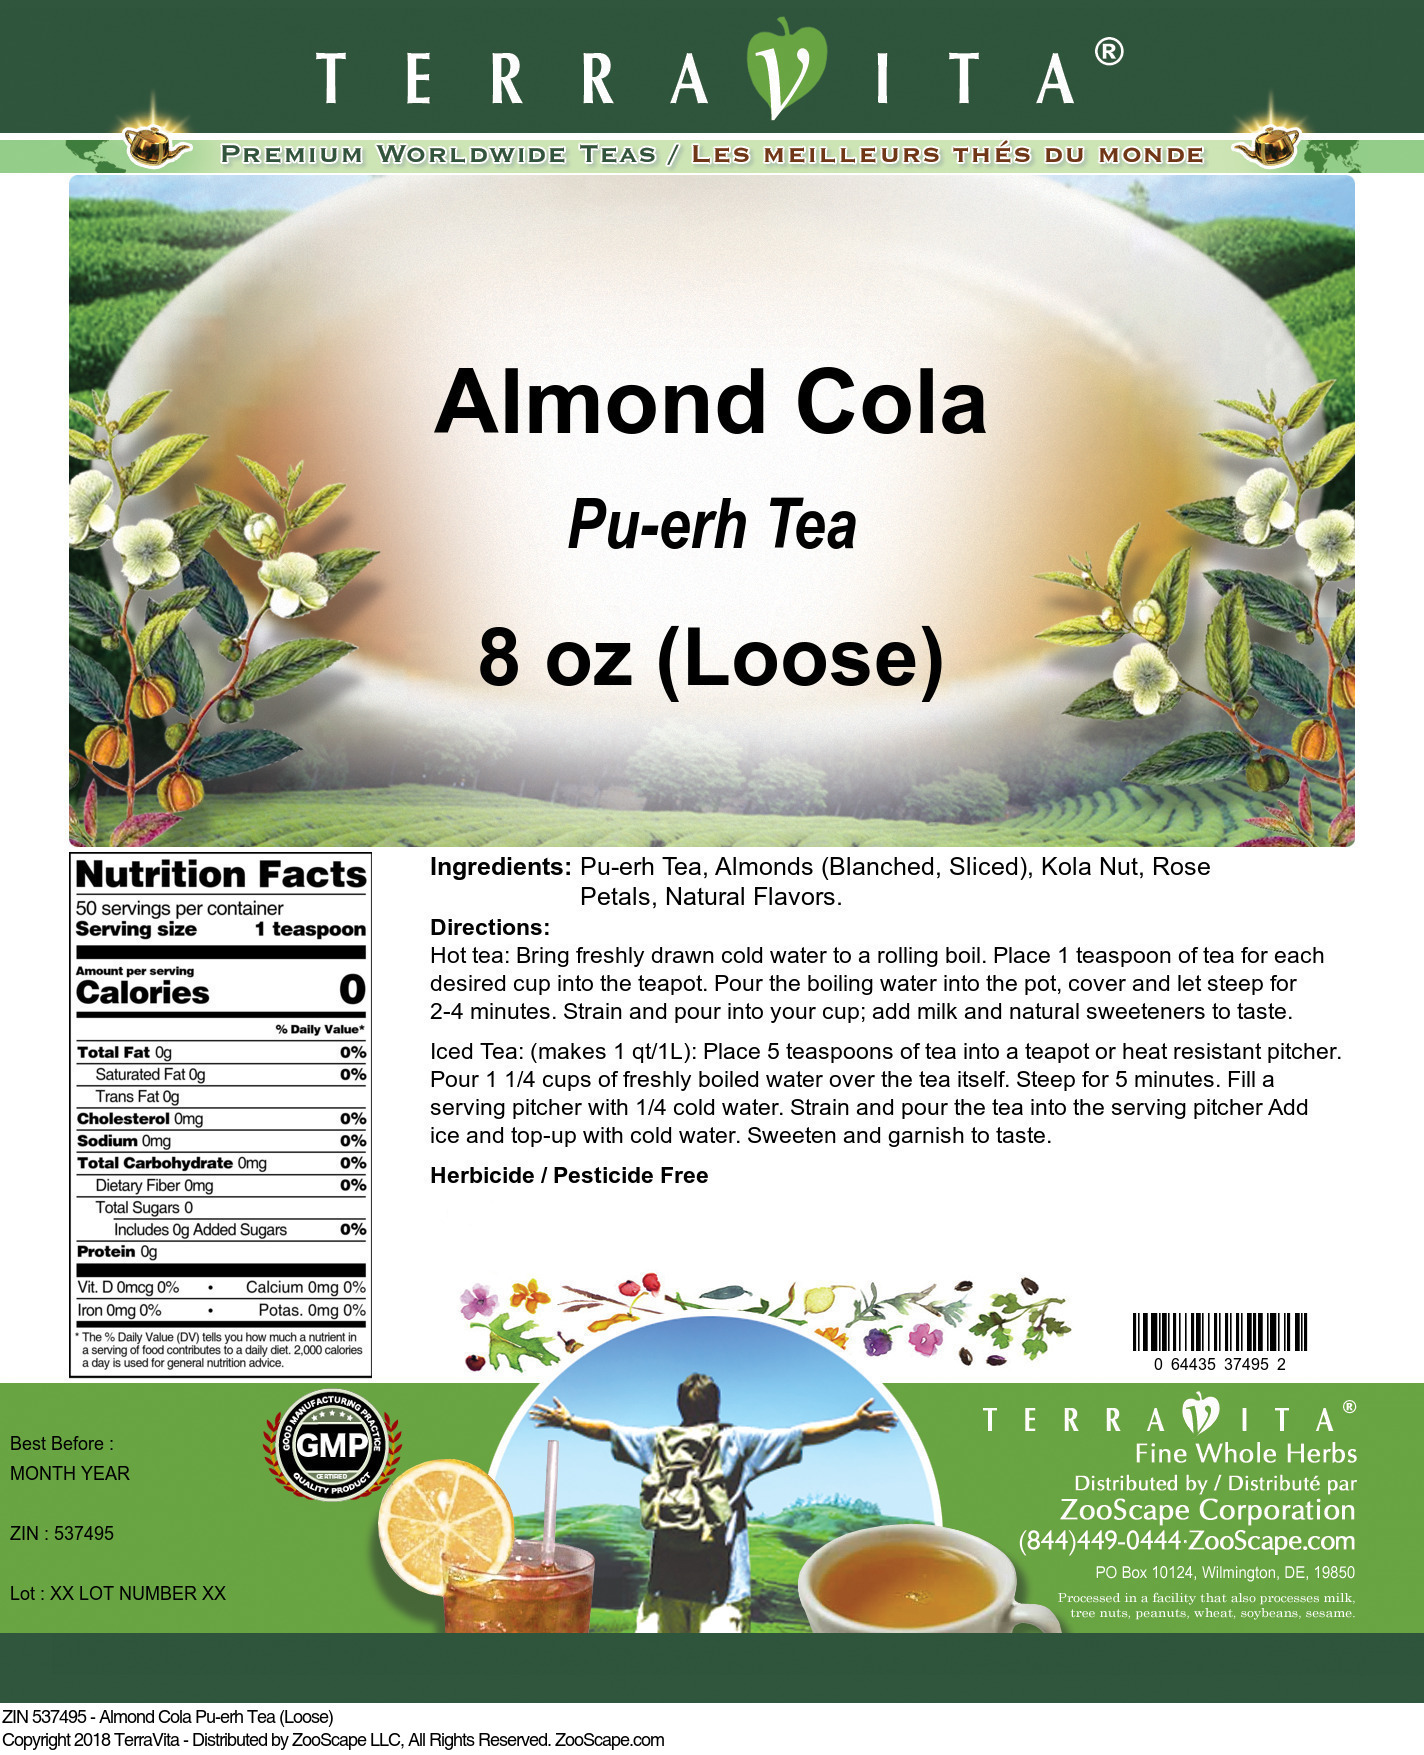 Almond Cola Pu-erh Tea (Loose) - Label